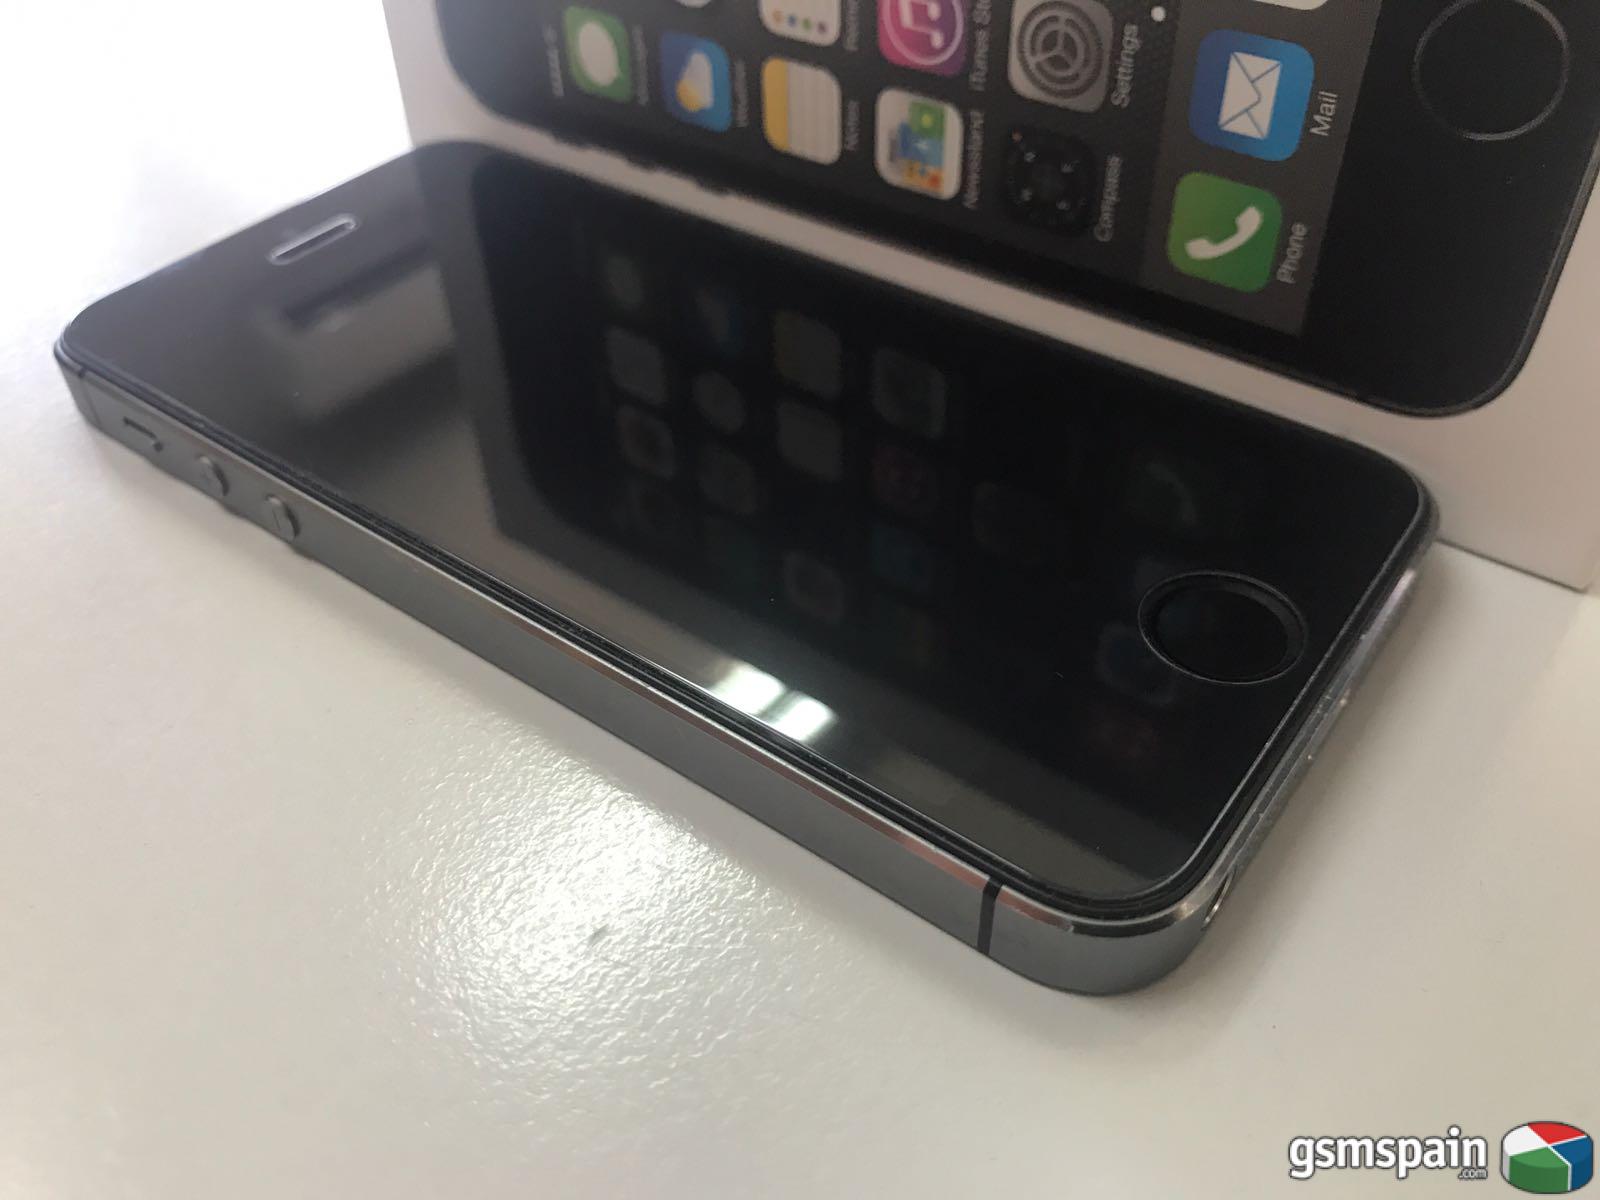 [VENDO] Iphone 5s 16 gigas